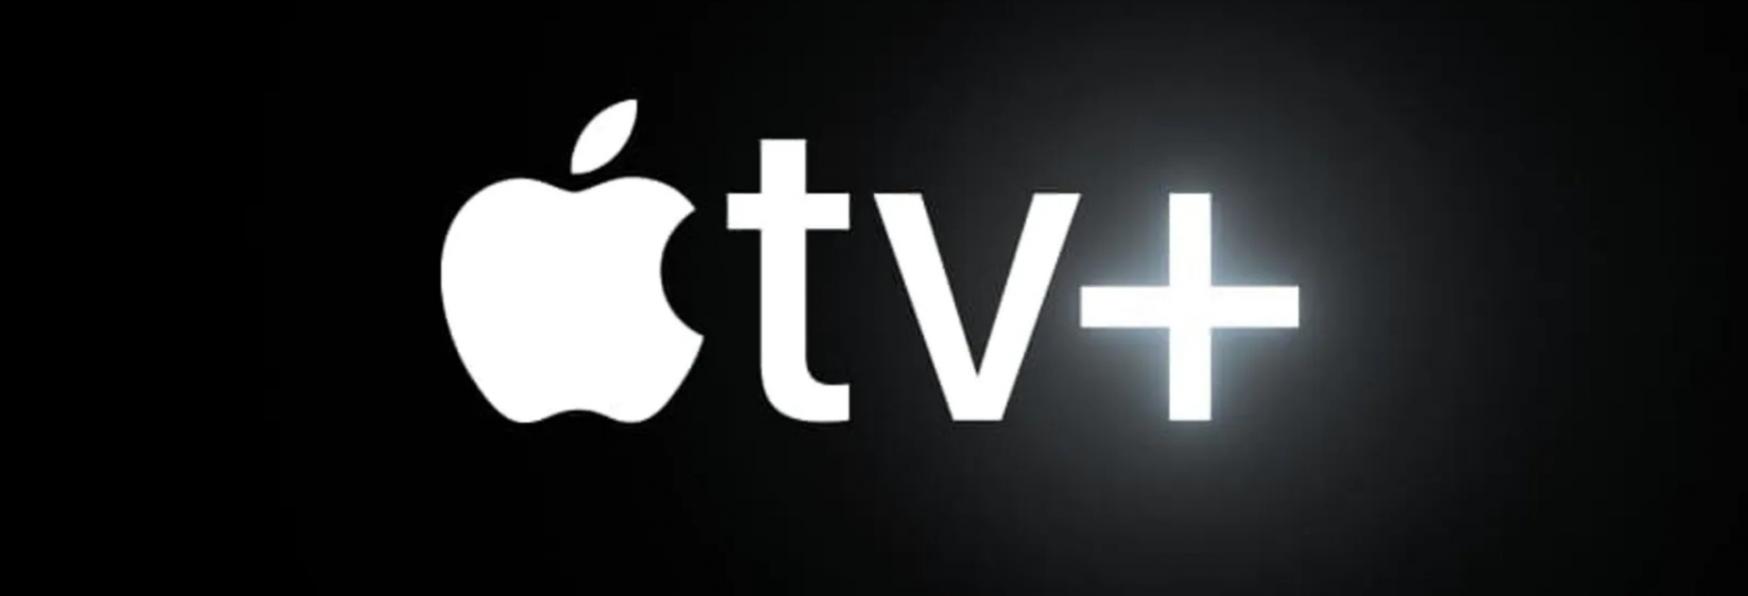 The New Look: John Malkovich, Emily Mortimer e Claes Bang nel Cast della nuova Serie TV di Apple